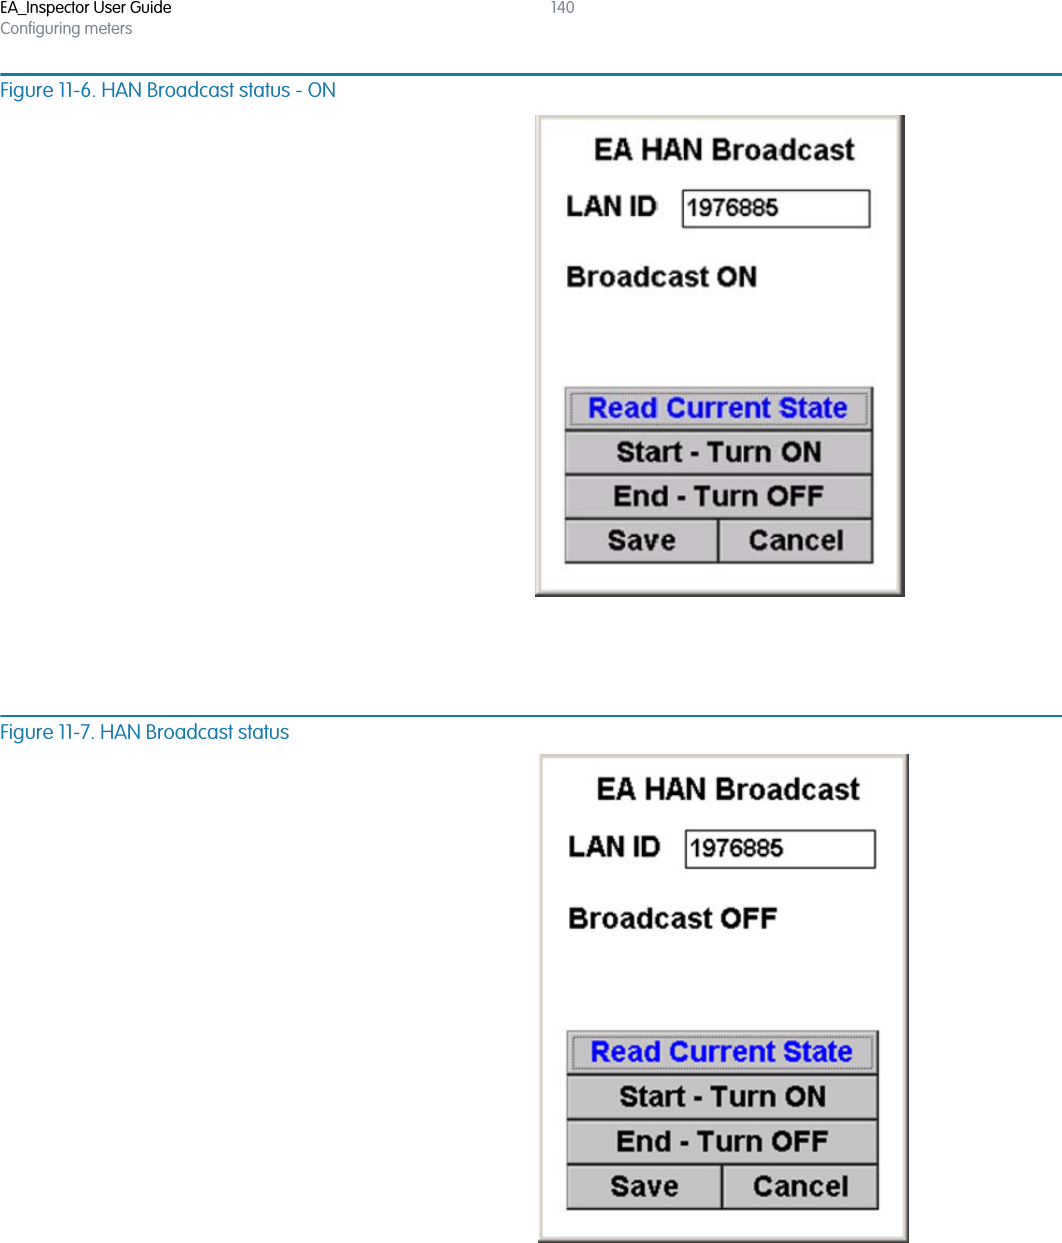 EA_Inspector User GuideConfiguring meters140Figure 11-6. HAN Broadcast status - ONFigure 11-7. HAN Broadcast status